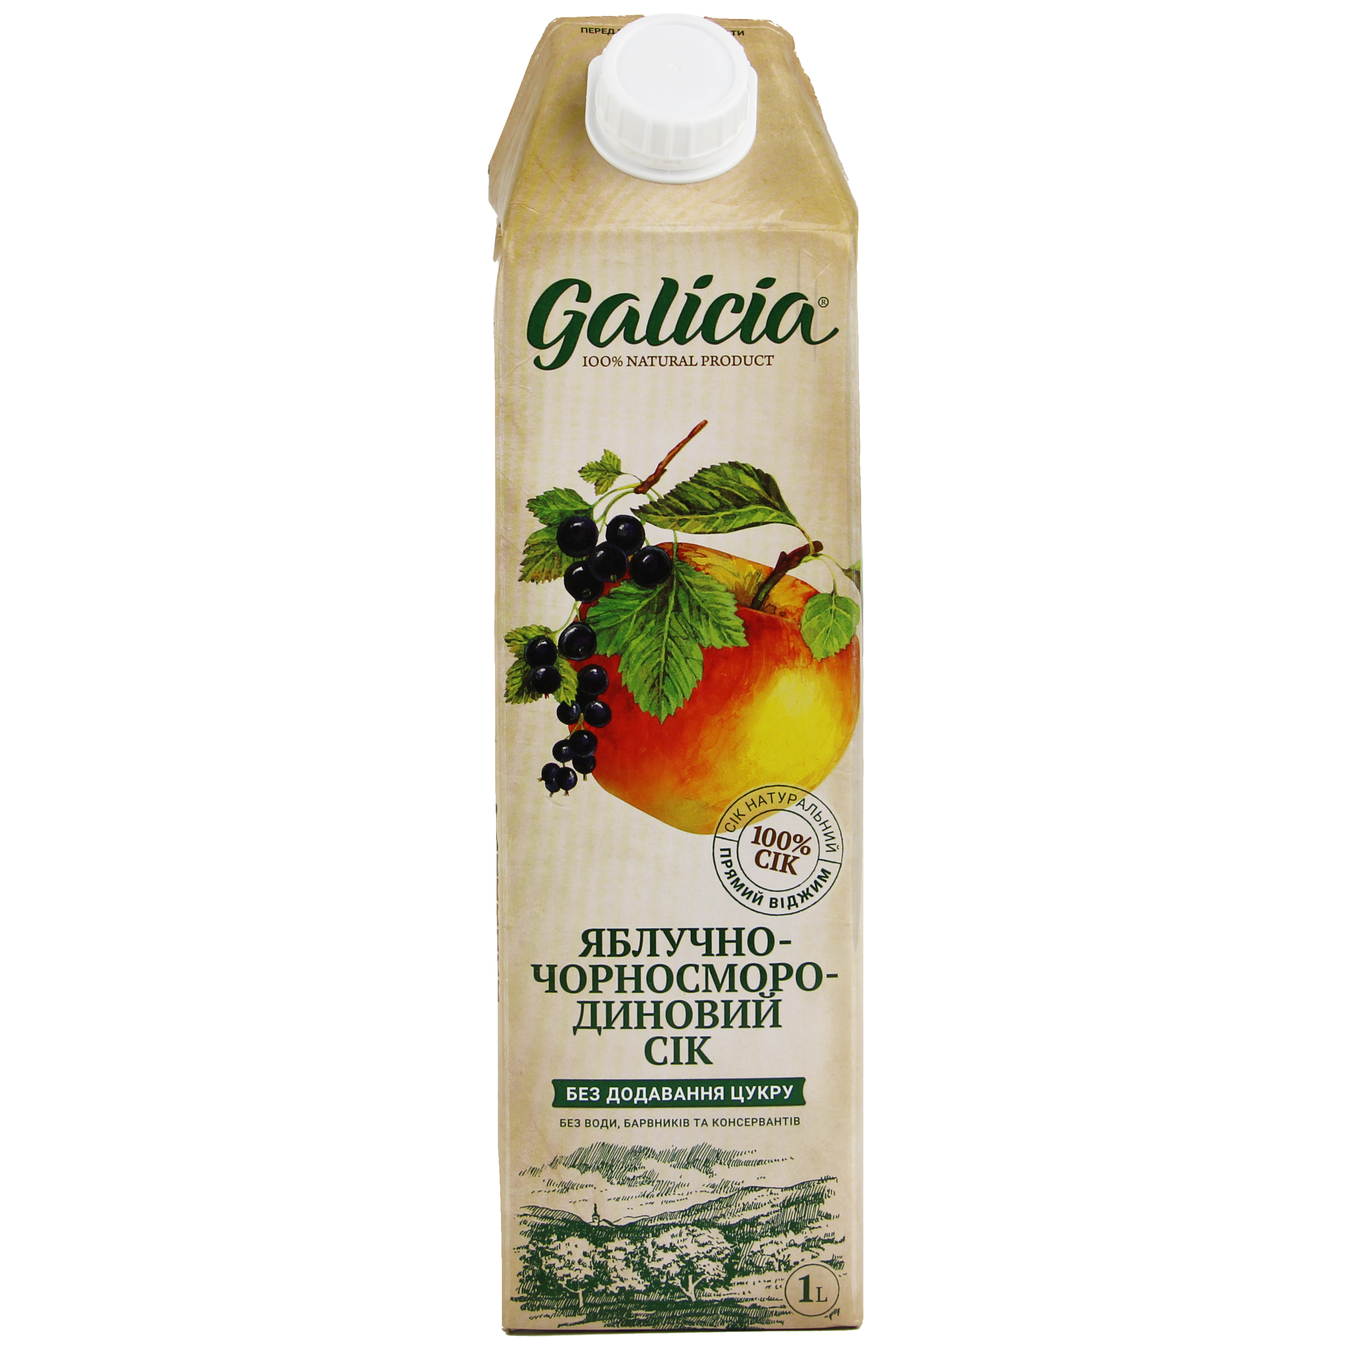 Galicia Apple-Blackcurrant Juice 1l